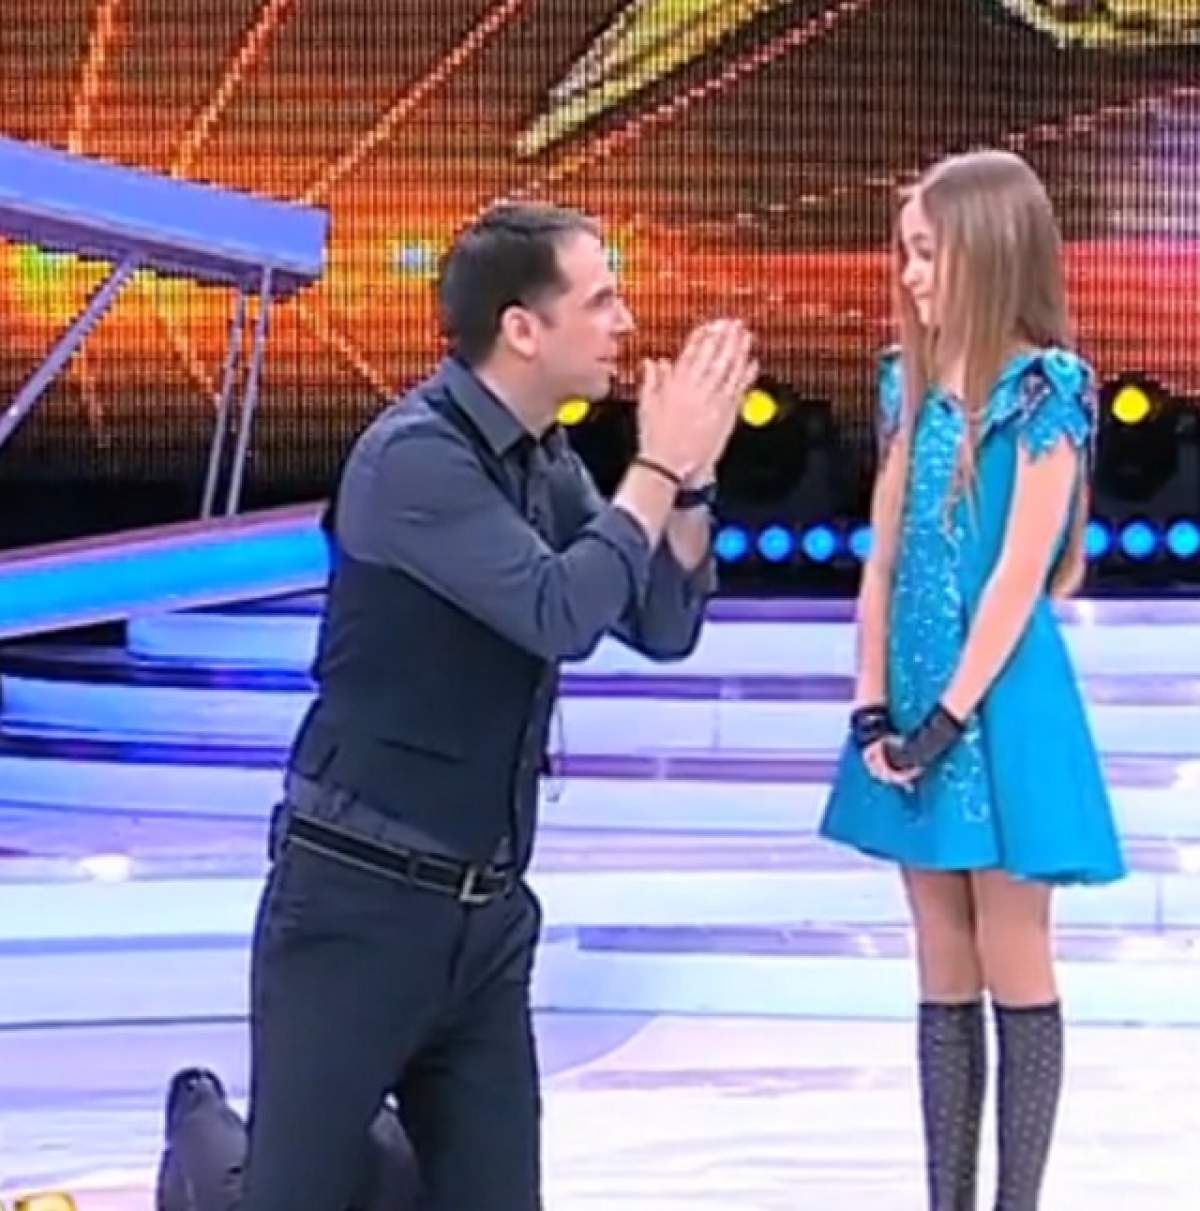 VIDEO / Surpriza care a emoționat-o până la lacrimi pe o concurentă de la "Next Star"! Ce ”cadou” i-a pregătit Dan Negru